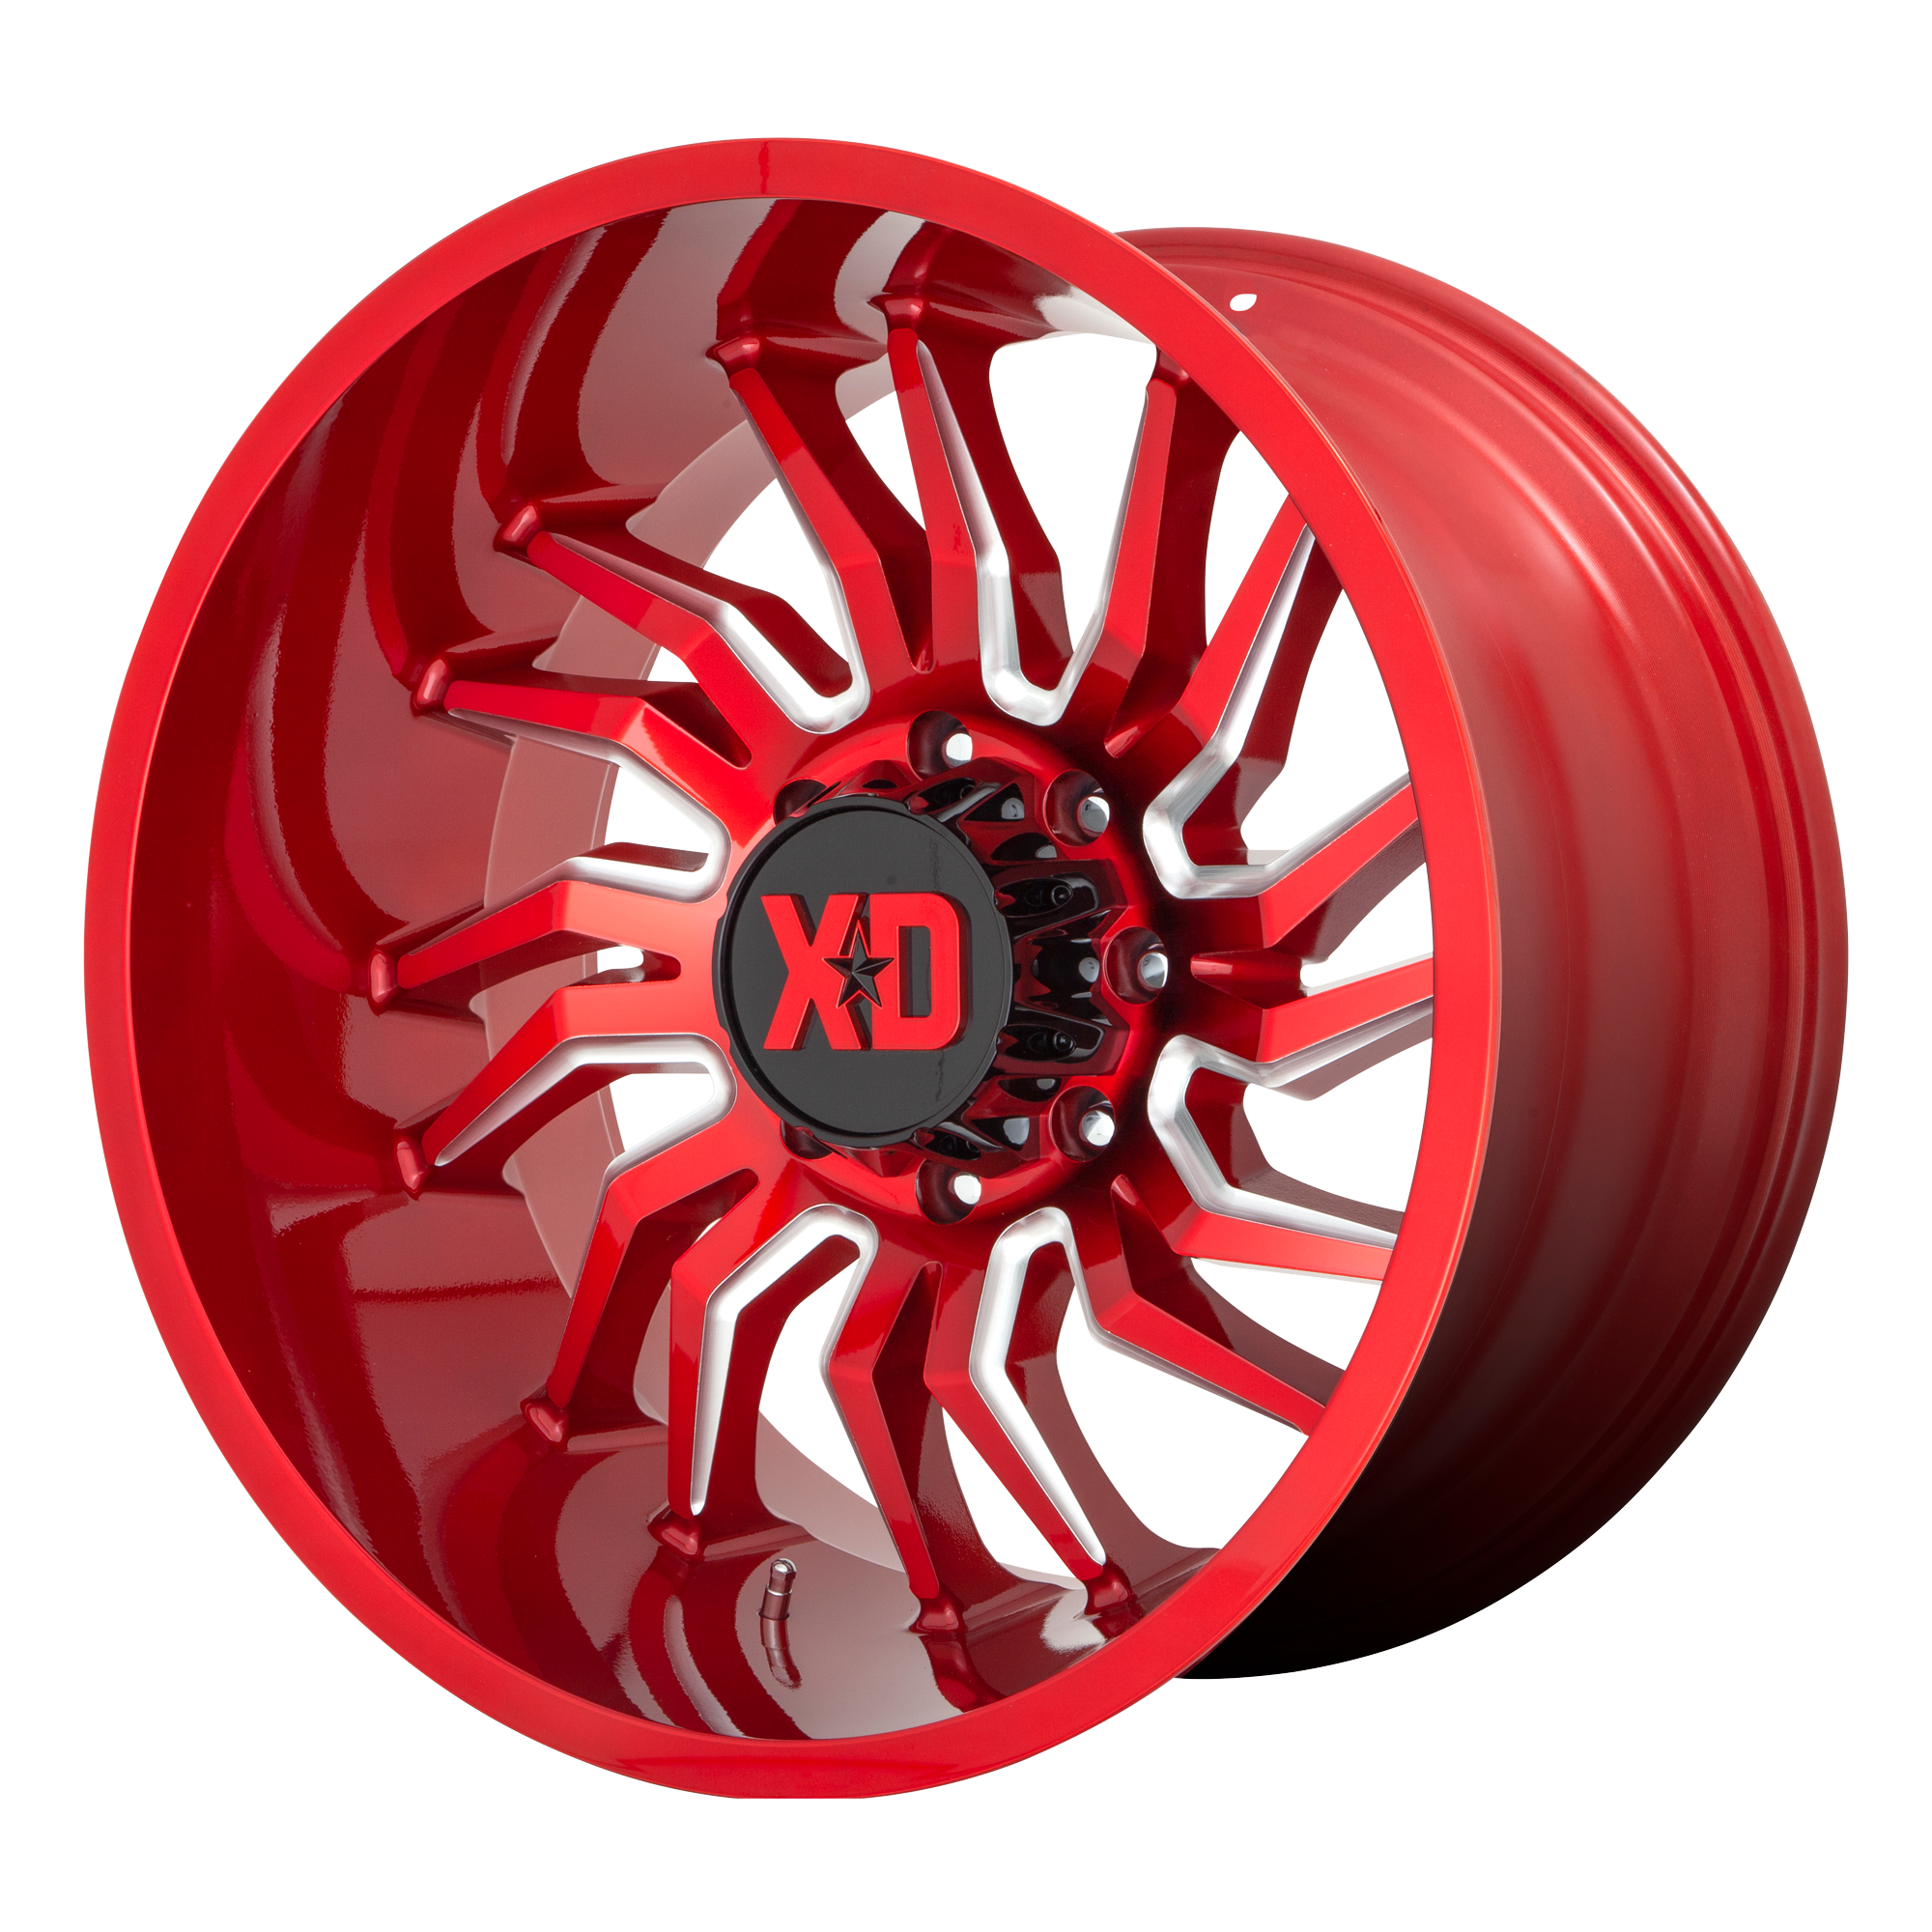 XD 22"x10" Non-Chrome Candy Red Milled Custom Wheel ARSWCWXD85822063918N